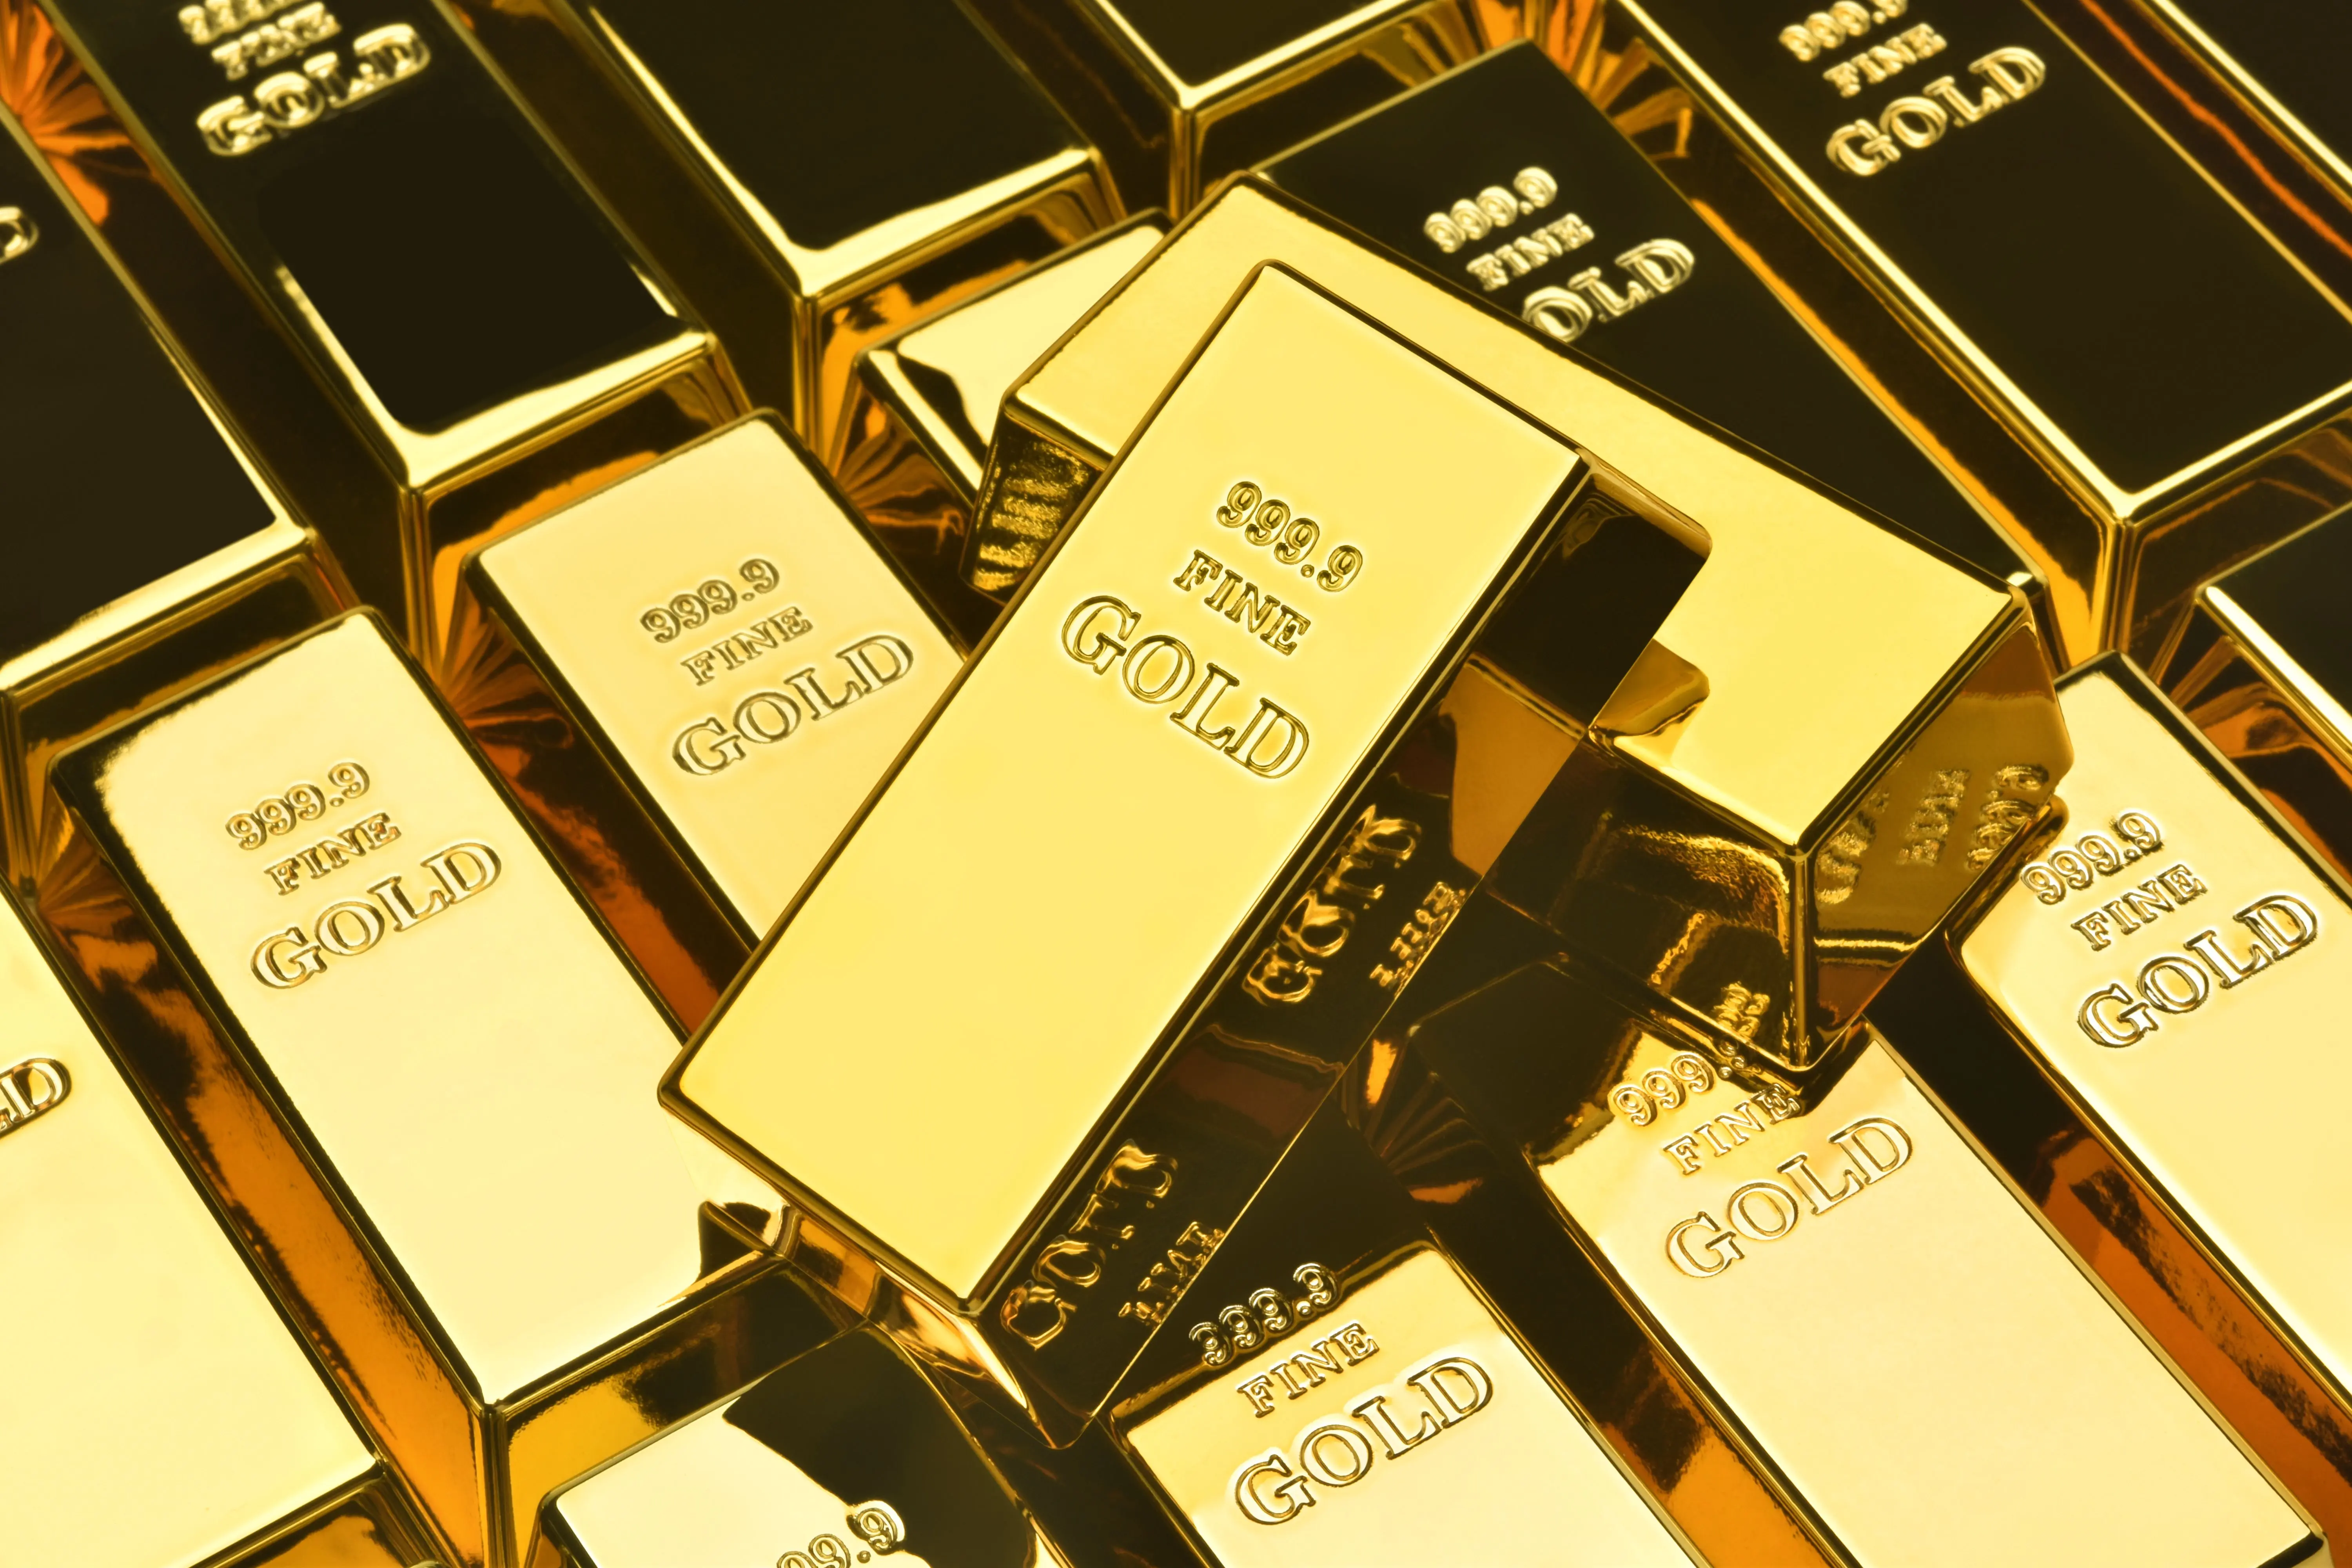 Інтервал між досягненням рекордних цін на золото становить 7 днів. На який рівень піднялося ціна золота?